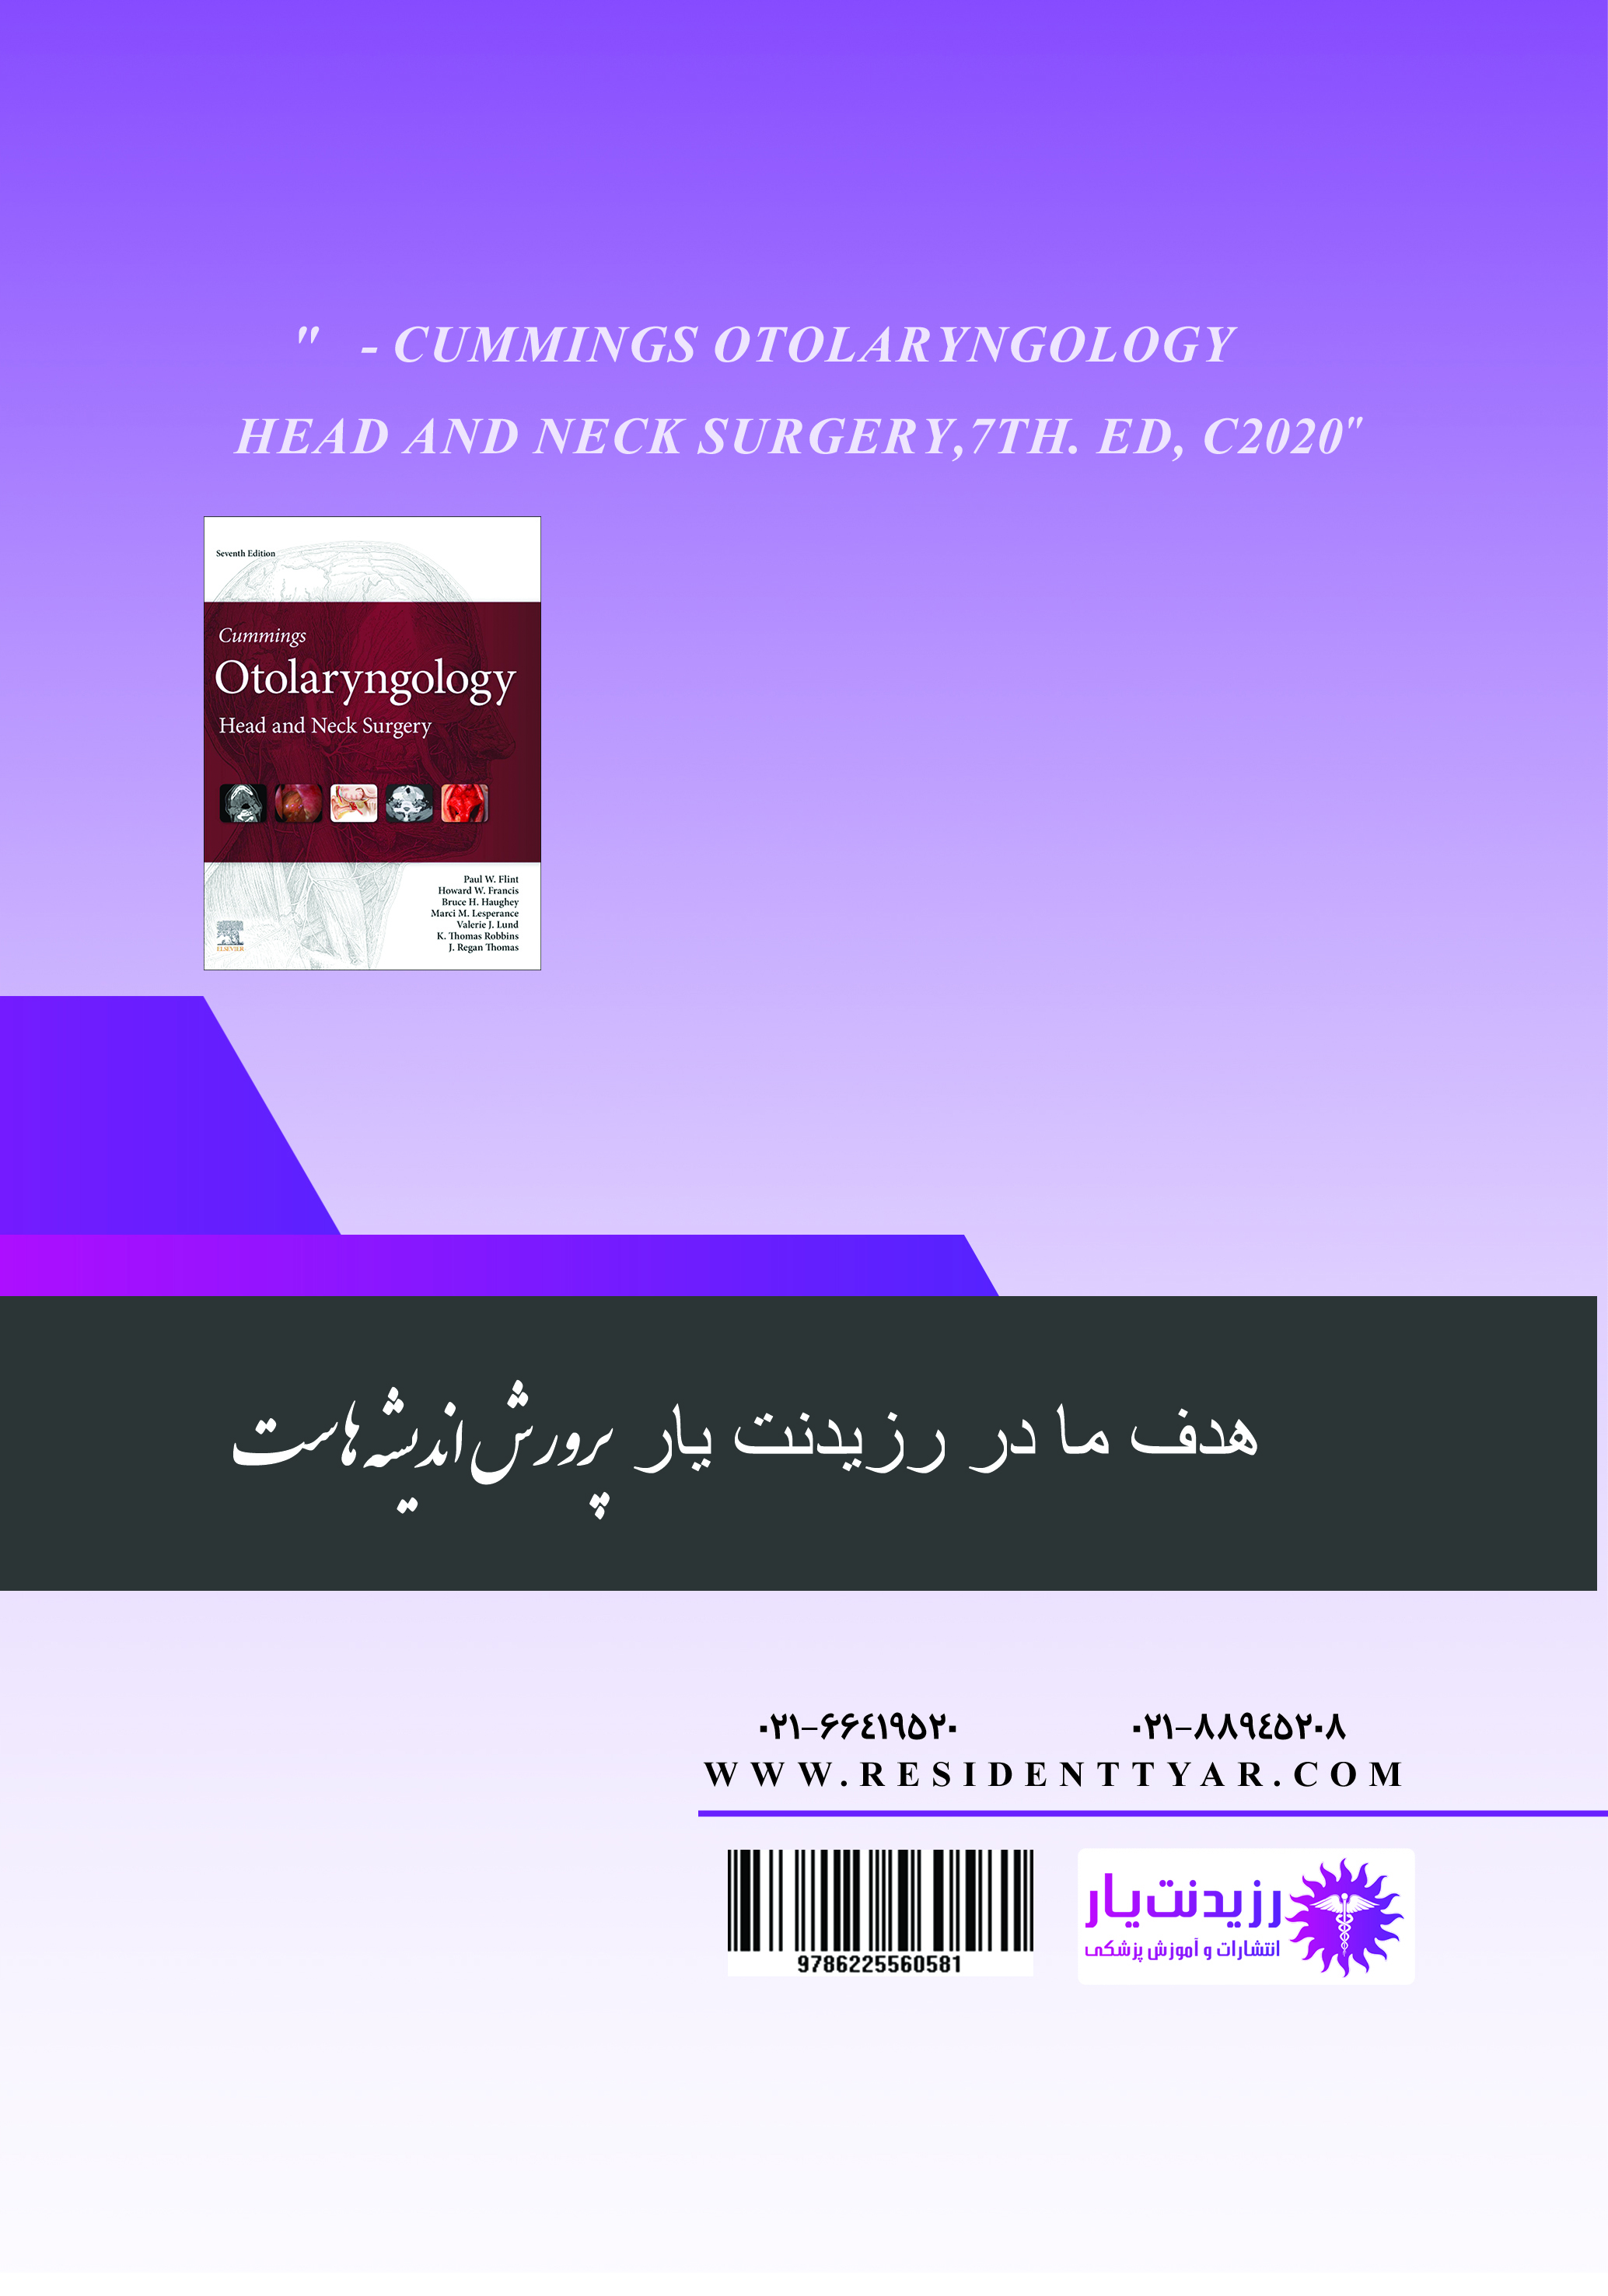 جلد 22 گوش و حلق و بینی : جراحی پلاستیک صورت 1 - پشت جلد